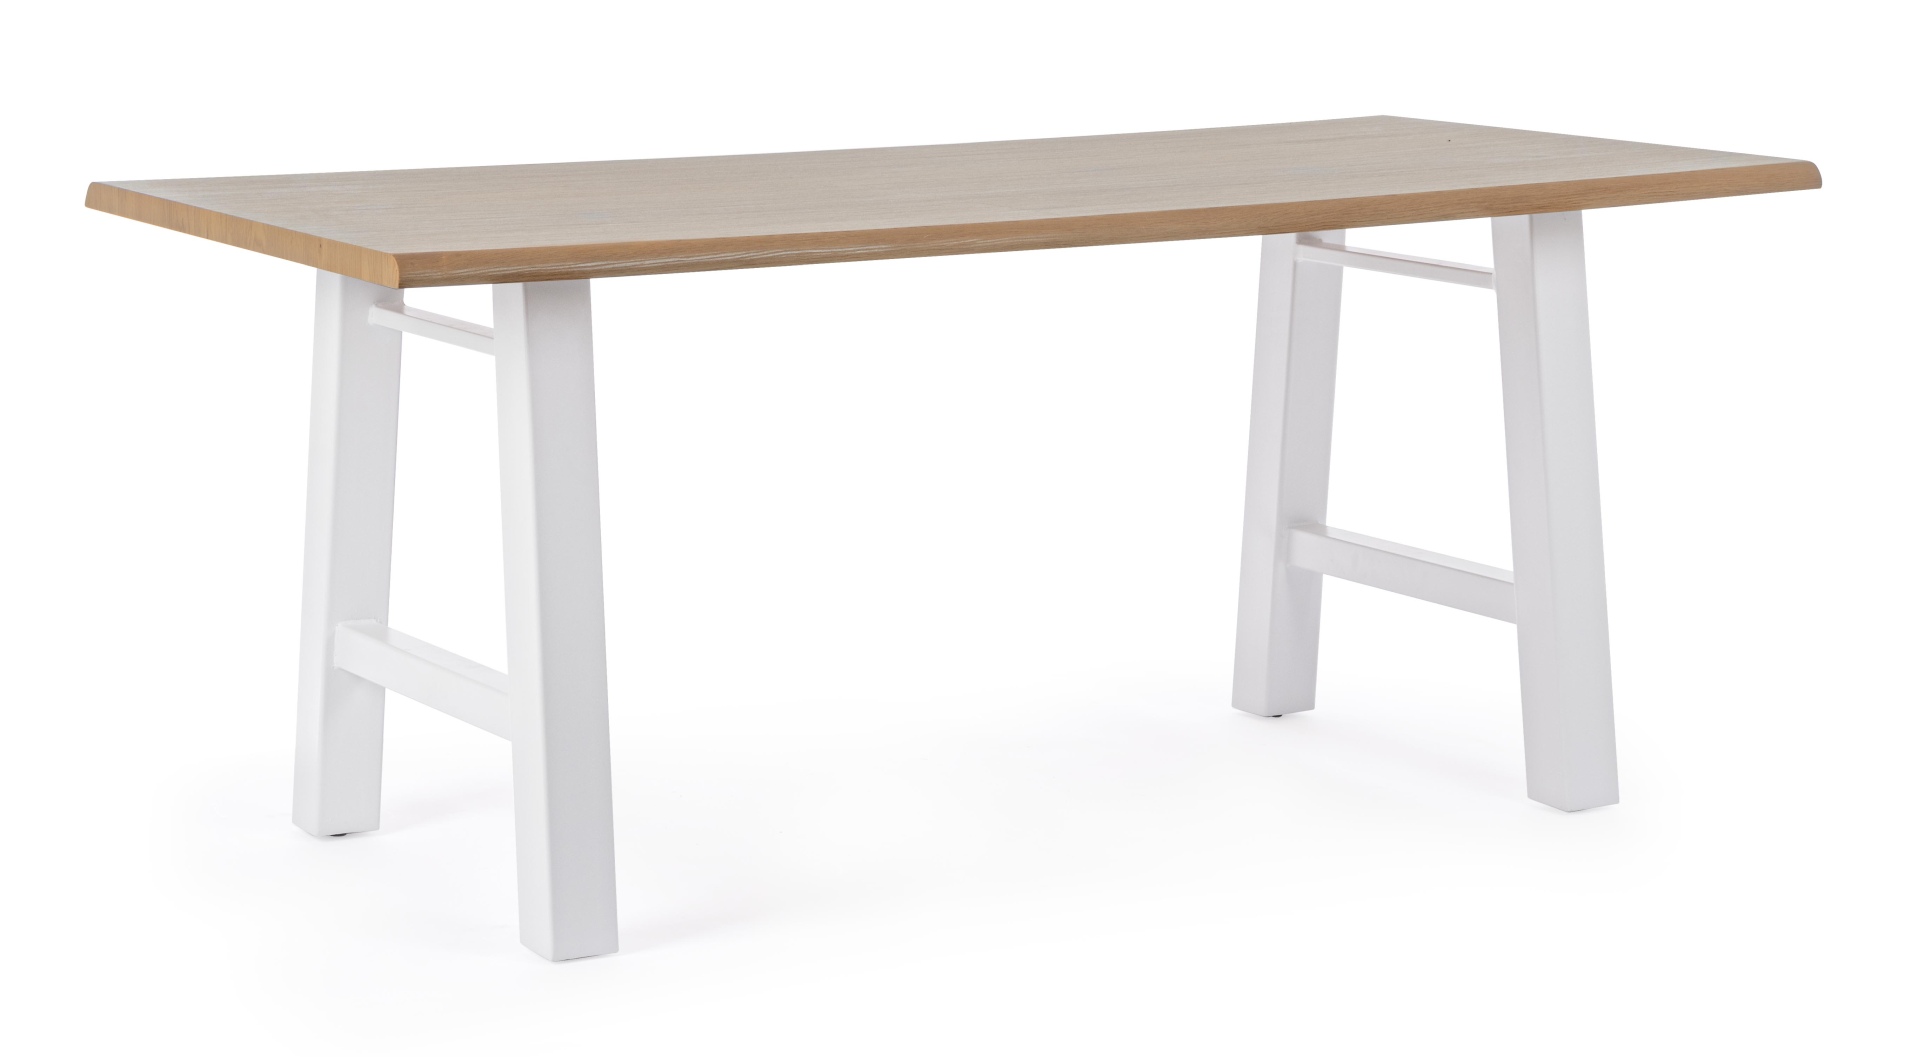 Der Esstisch Fred überzeugt mit seinem klassischem Design. Gefertigt wurde er aus MDF, welches eine Holz-Optik besitzt. Das Gestell des Tisches ist aus Metall und besitzt eine weißen Farbe. Der Tisch hat eine Breite von 180 cm.